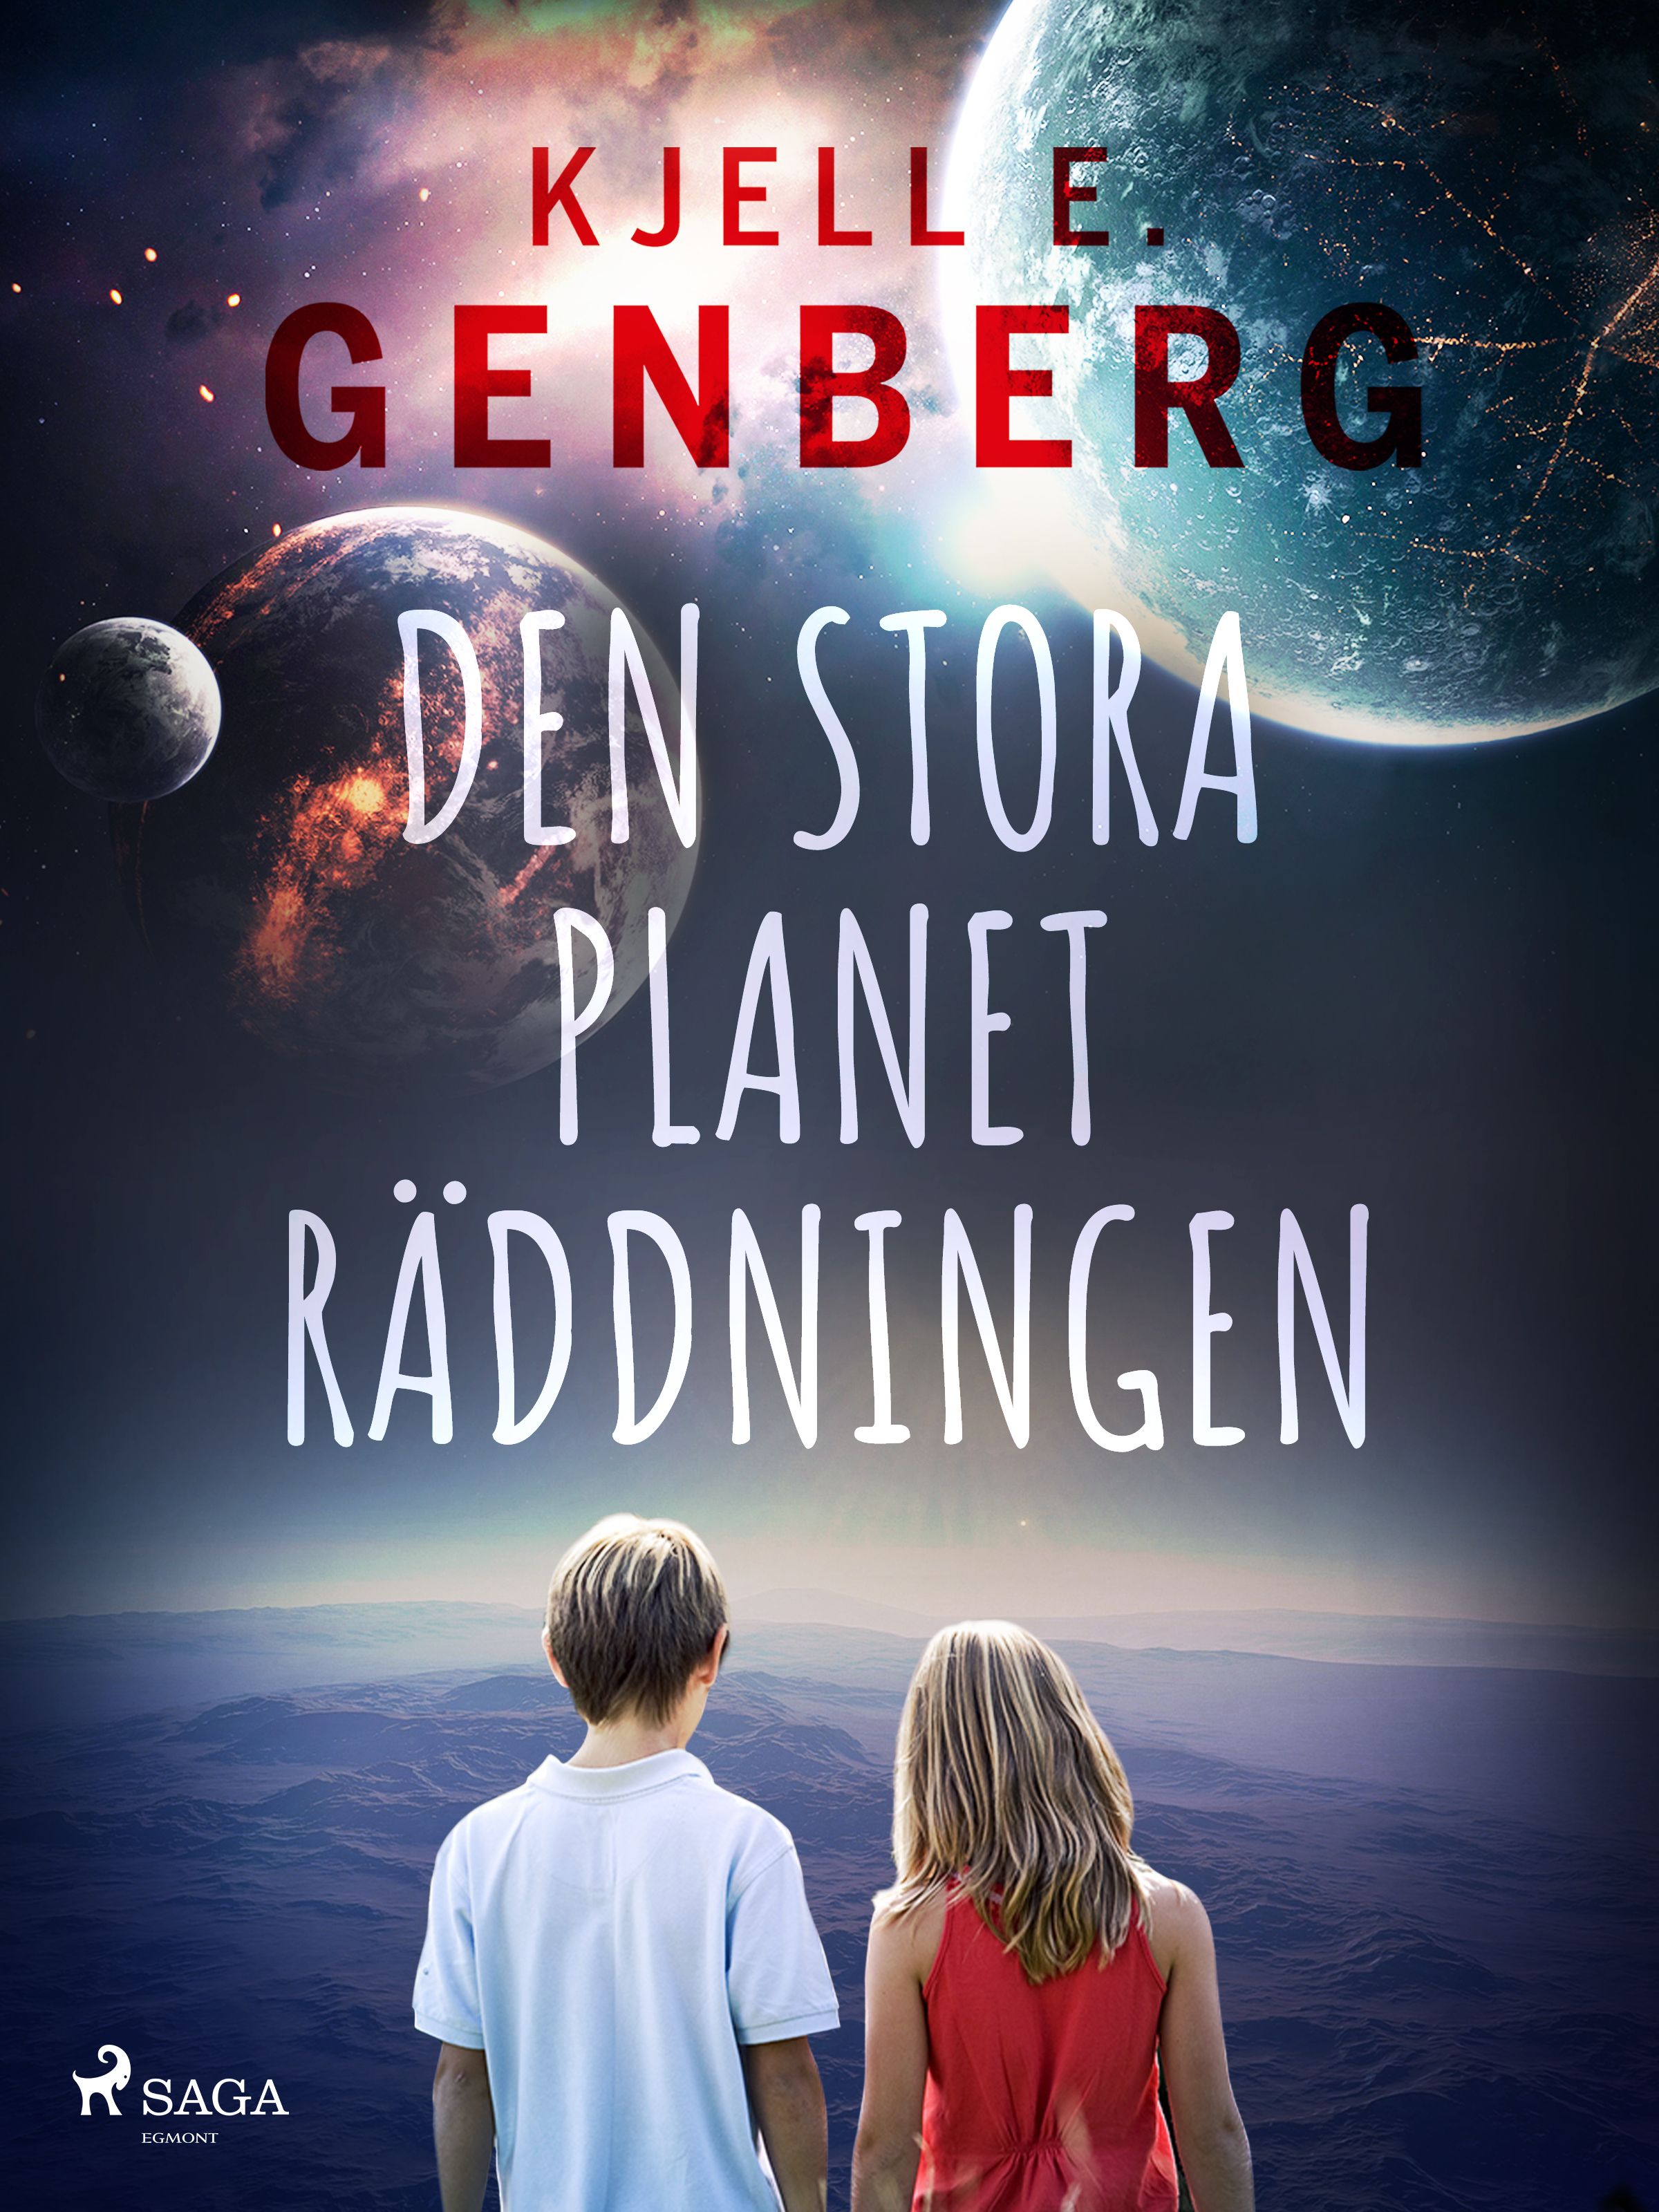 Den stora planeträddningen, eBook by Kjell E. Genberg